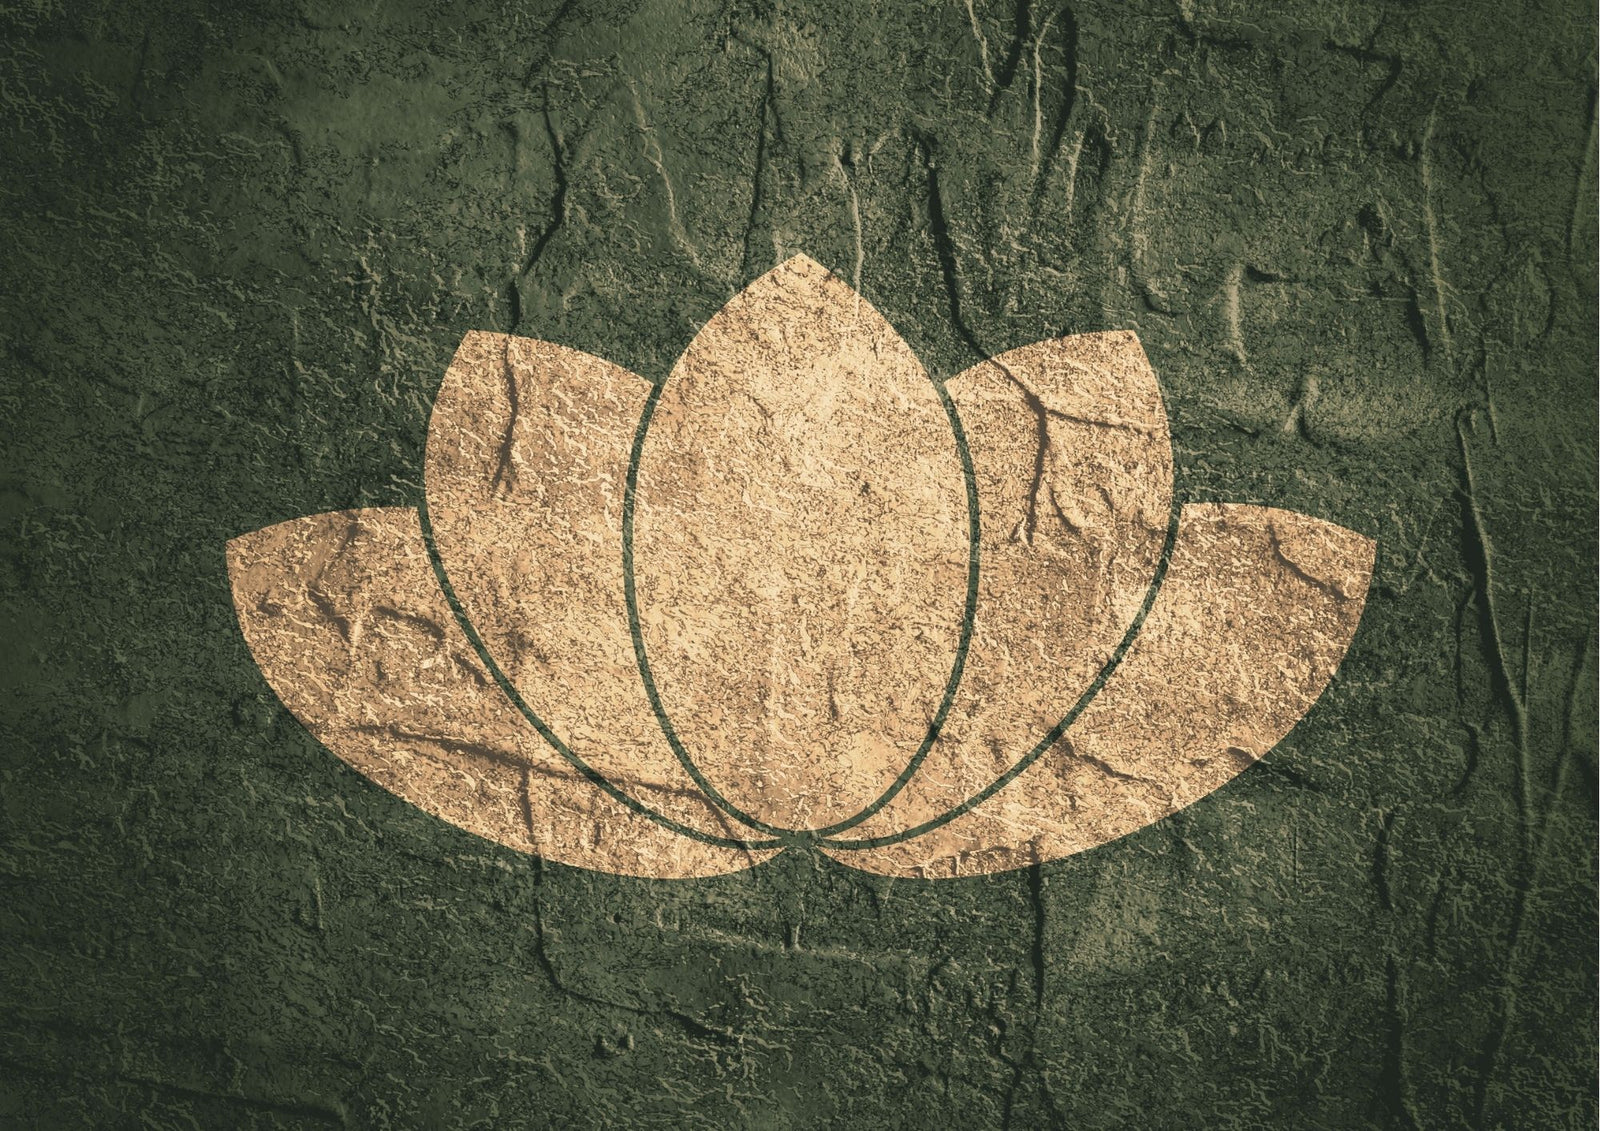 Que signifie la Fleur de Lotus ?